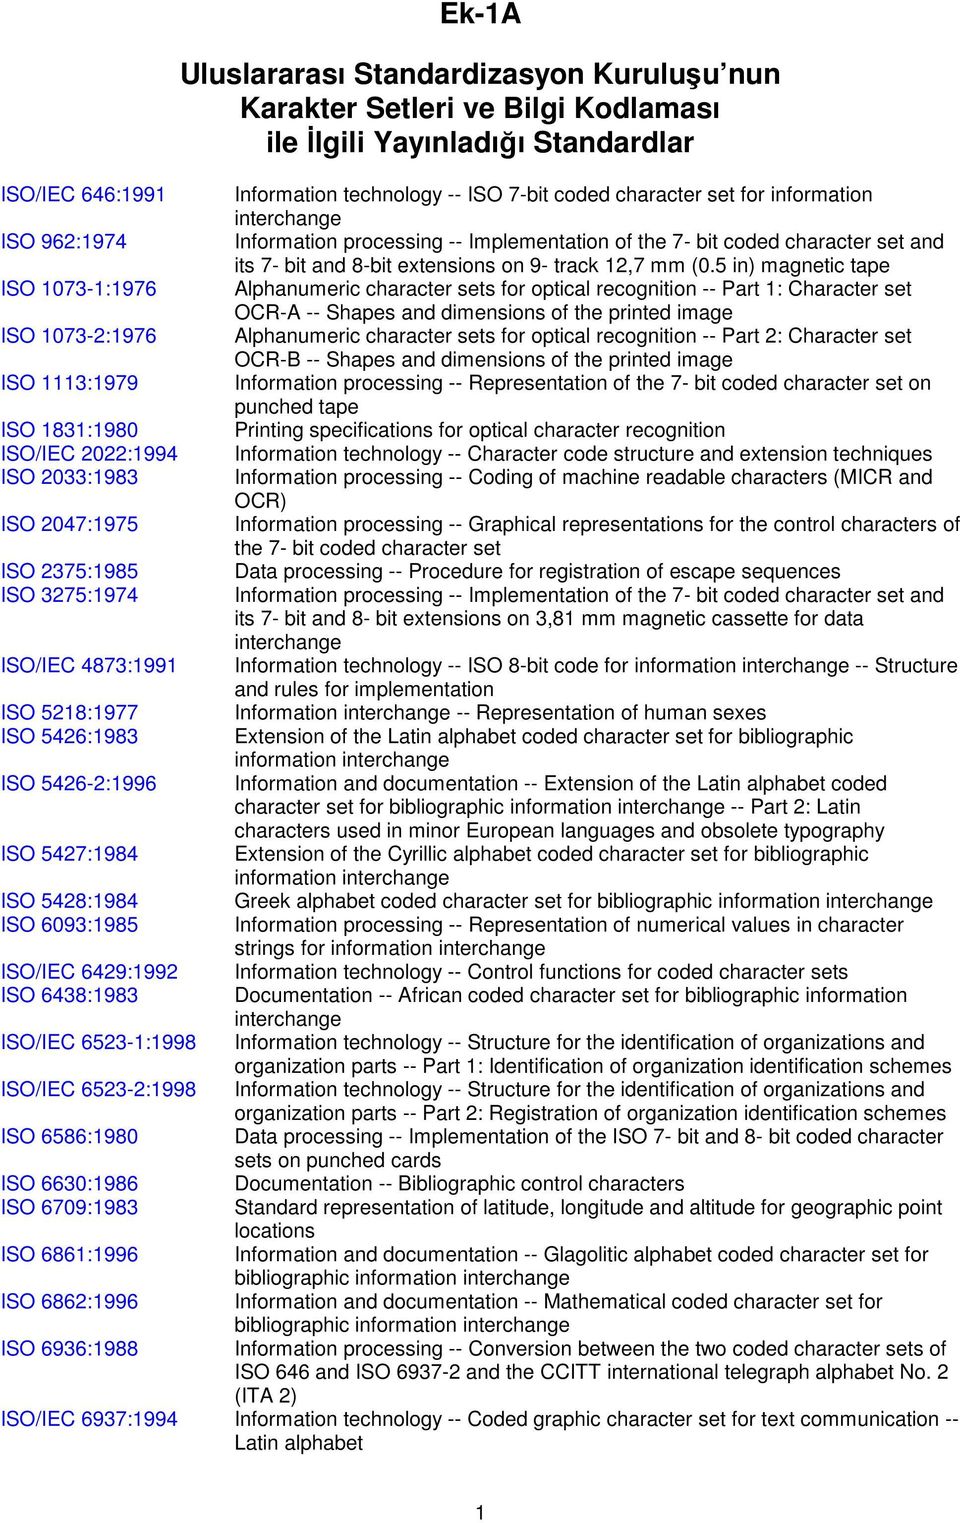 6862:1996 ISO 6936:1988 Ek-1A Uluslararası Standardizasyon Kuruluşu nun Karakter Setleri ve Bilgi Kodlaması ile Đlgili Yayınladığı Standardlar Information technology -- ISO 7-bit coded character set